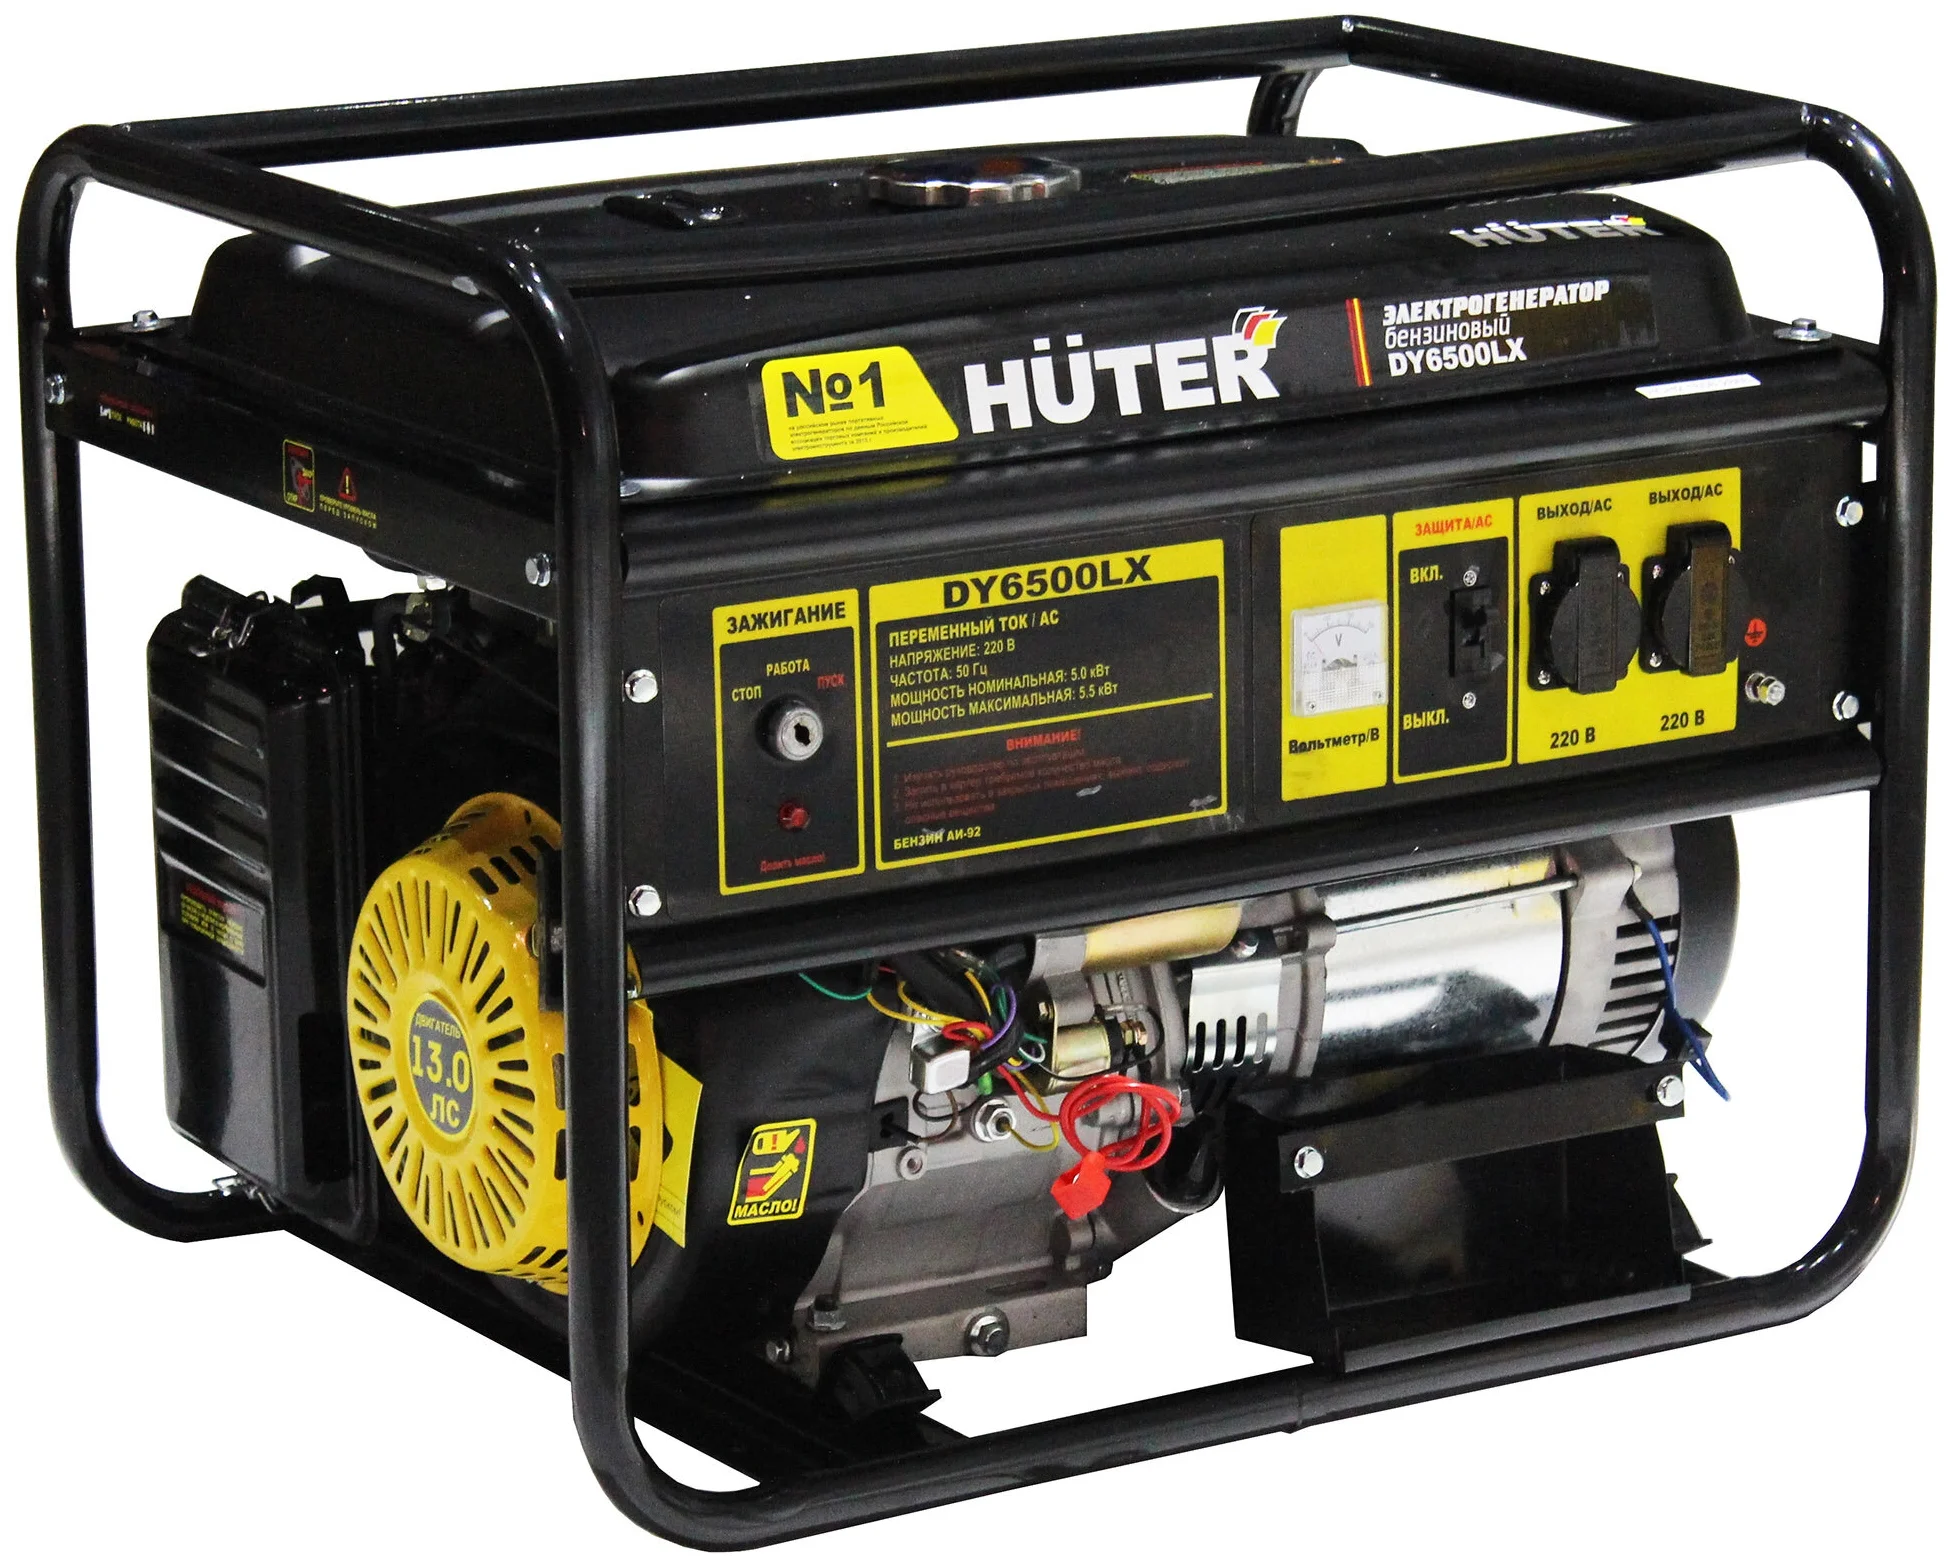 Huter DY6500LX, (5500 Вт) - максимальная мощность: 5500 Вт